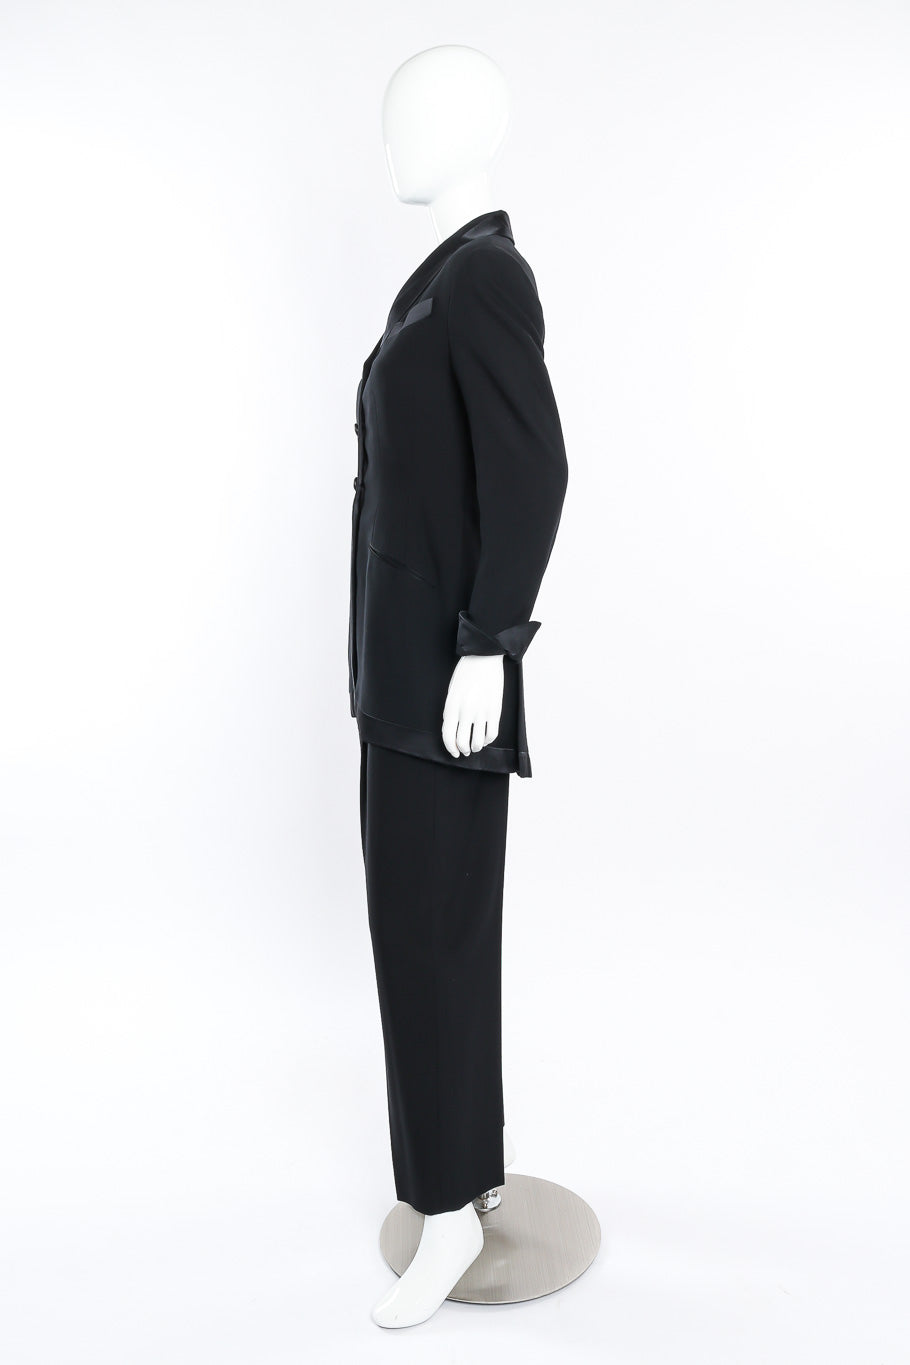 Vintage Richard Tyler Tuxedo Pant Suit side view on mannequin @Recessla